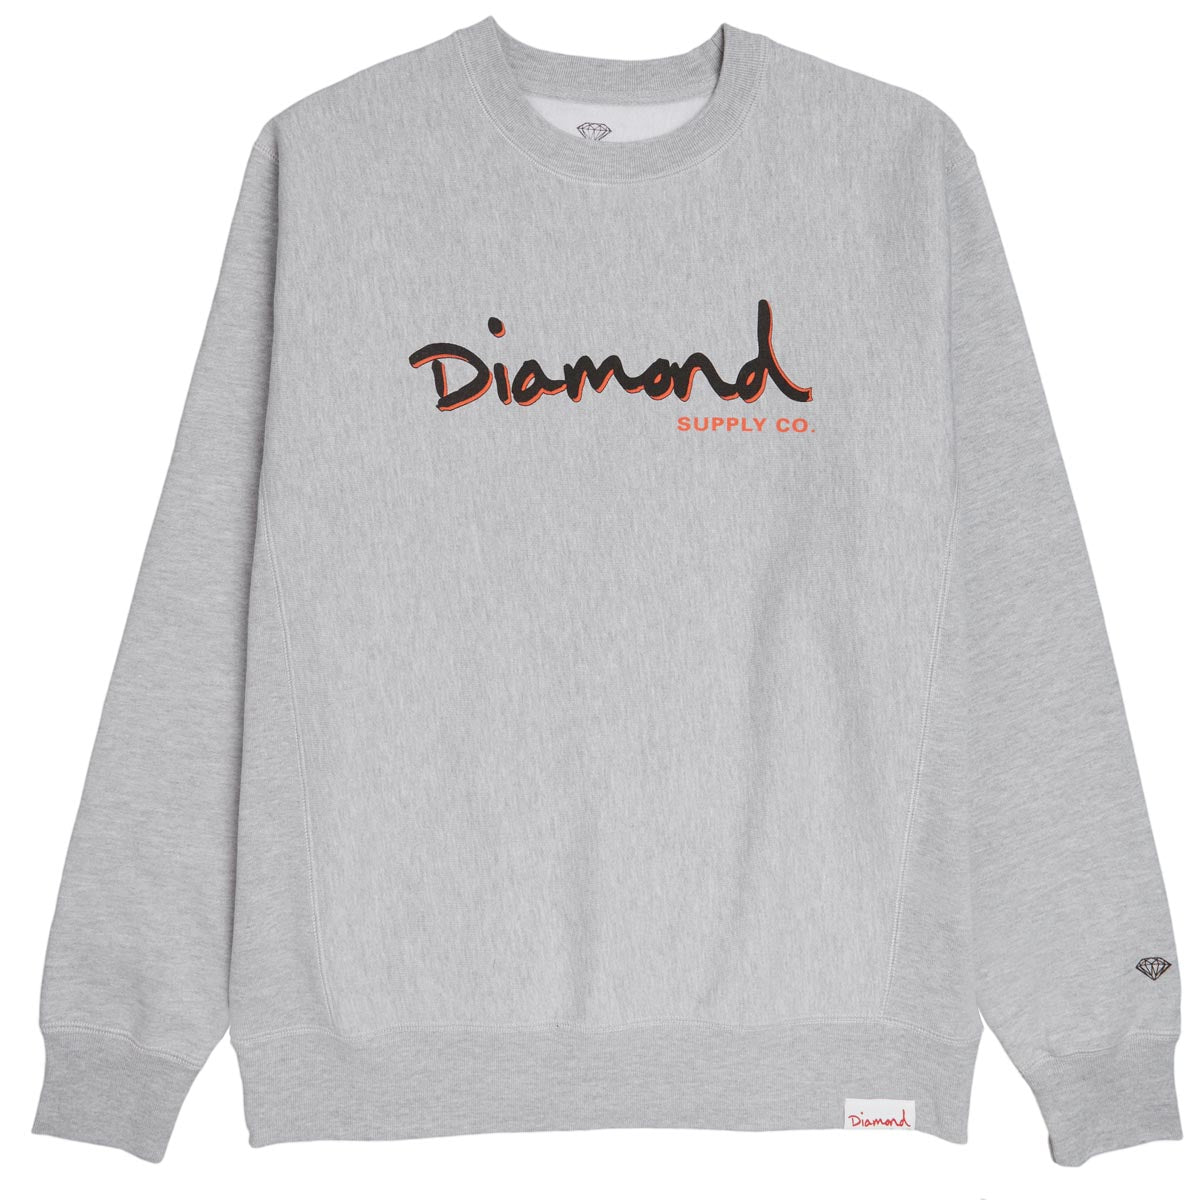 Diamond Supply Co. Outline Crewneck Sweatshirt - Heather Grey image 1